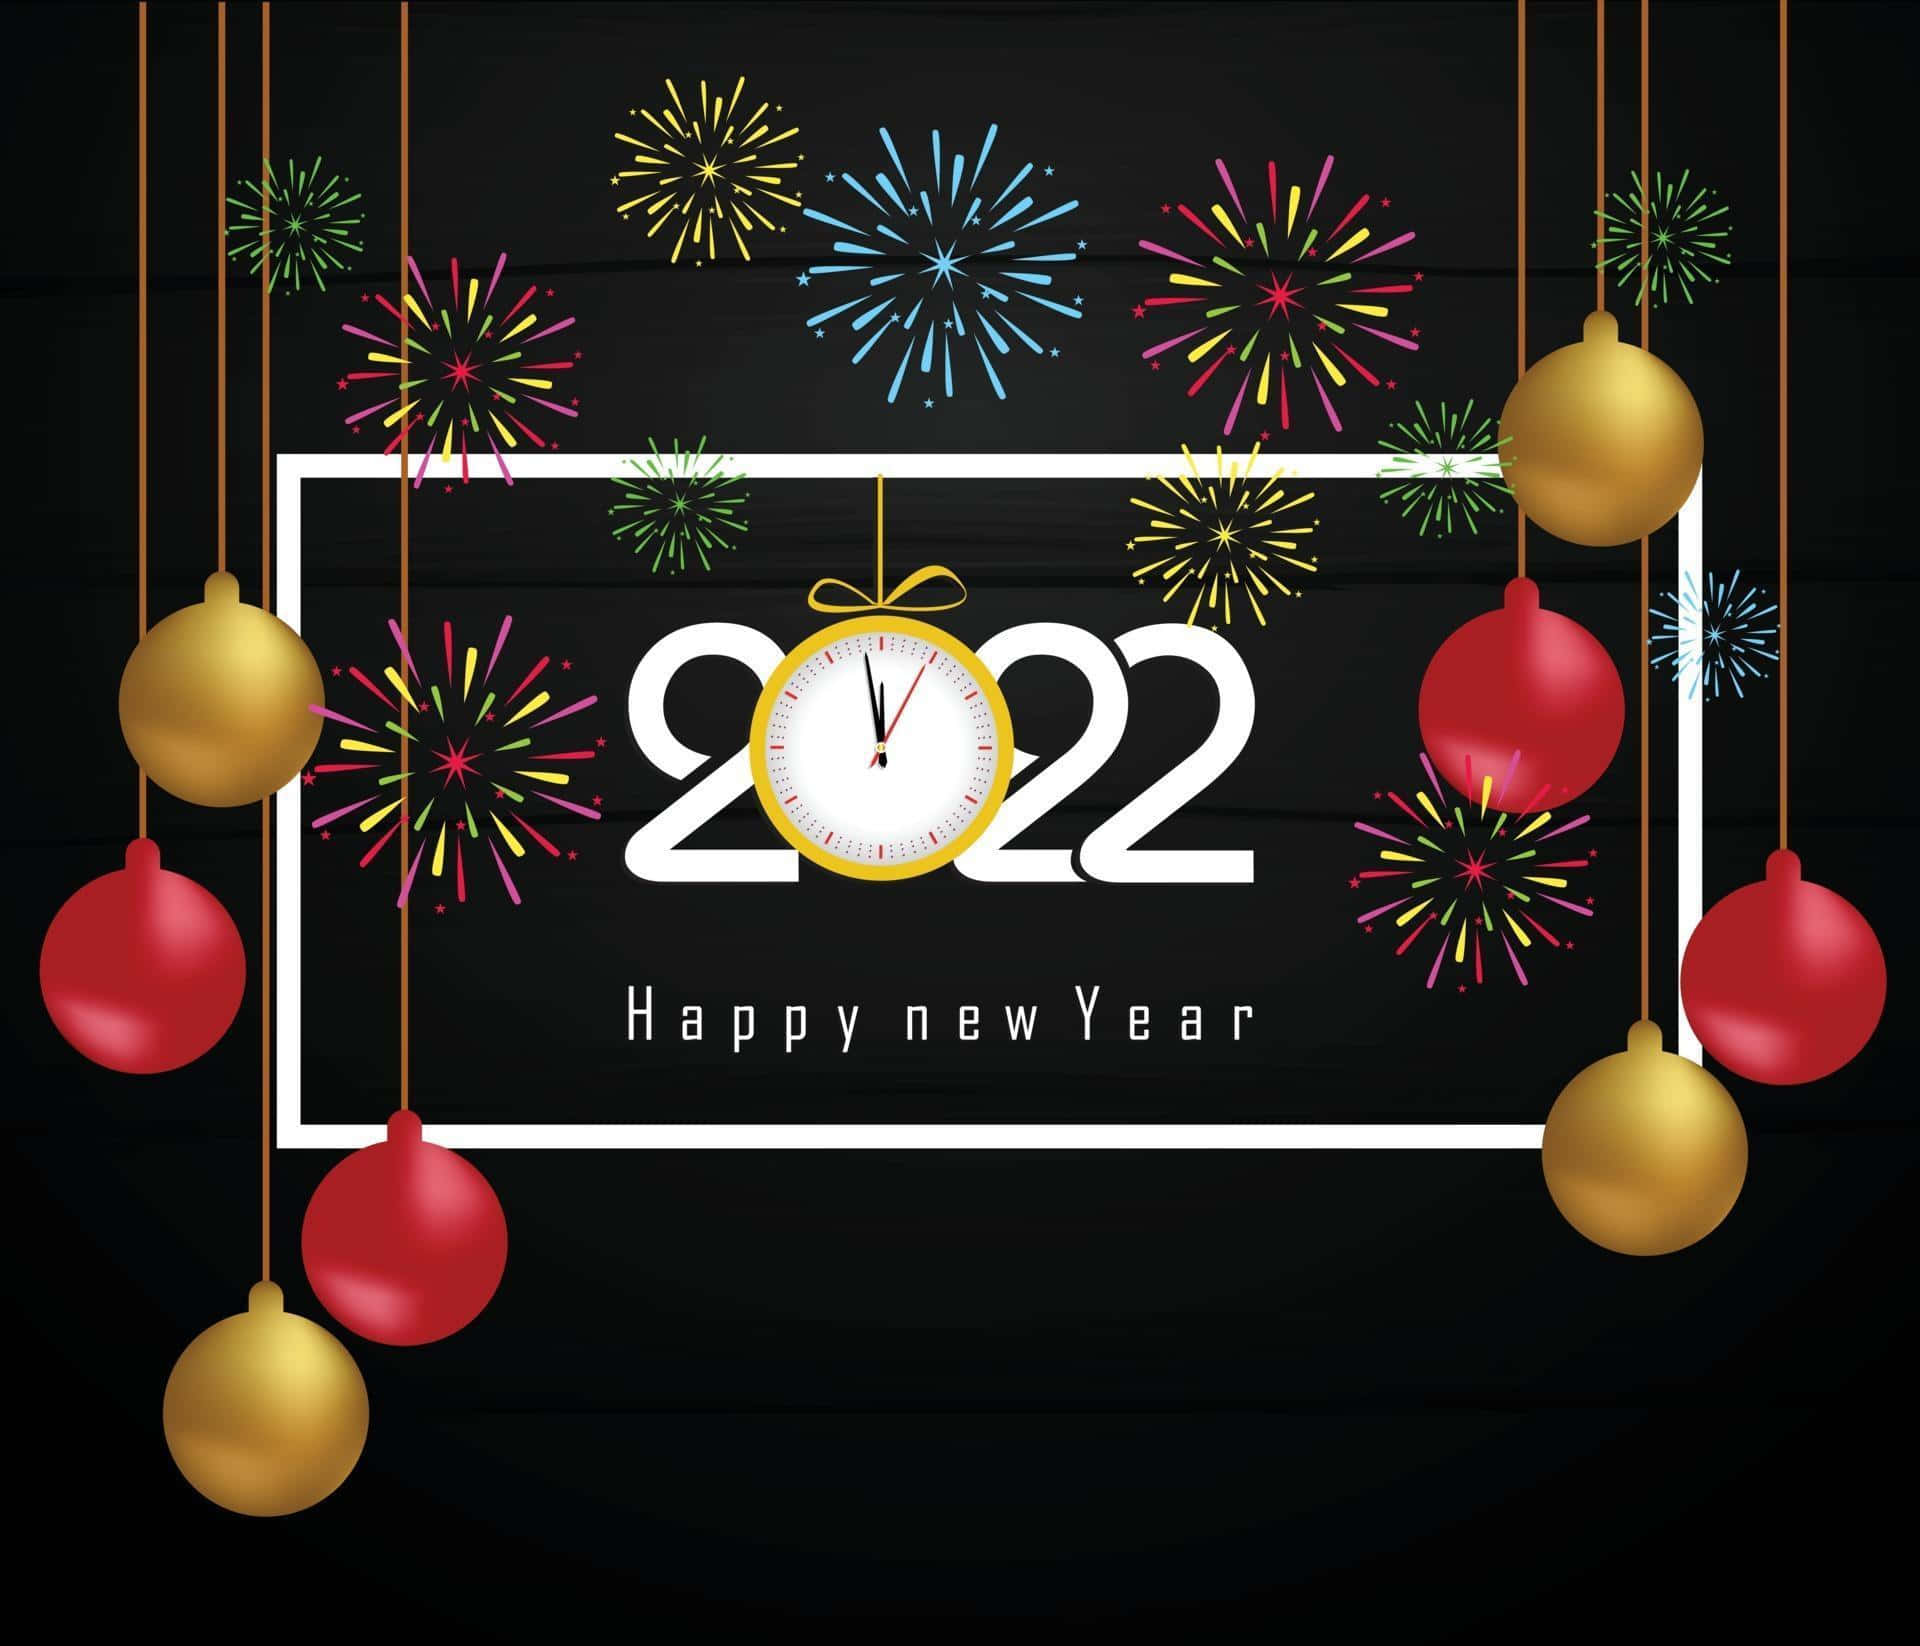 Machensie Einen Wunsch Für Ein Frohes Neues Jahr 2022!